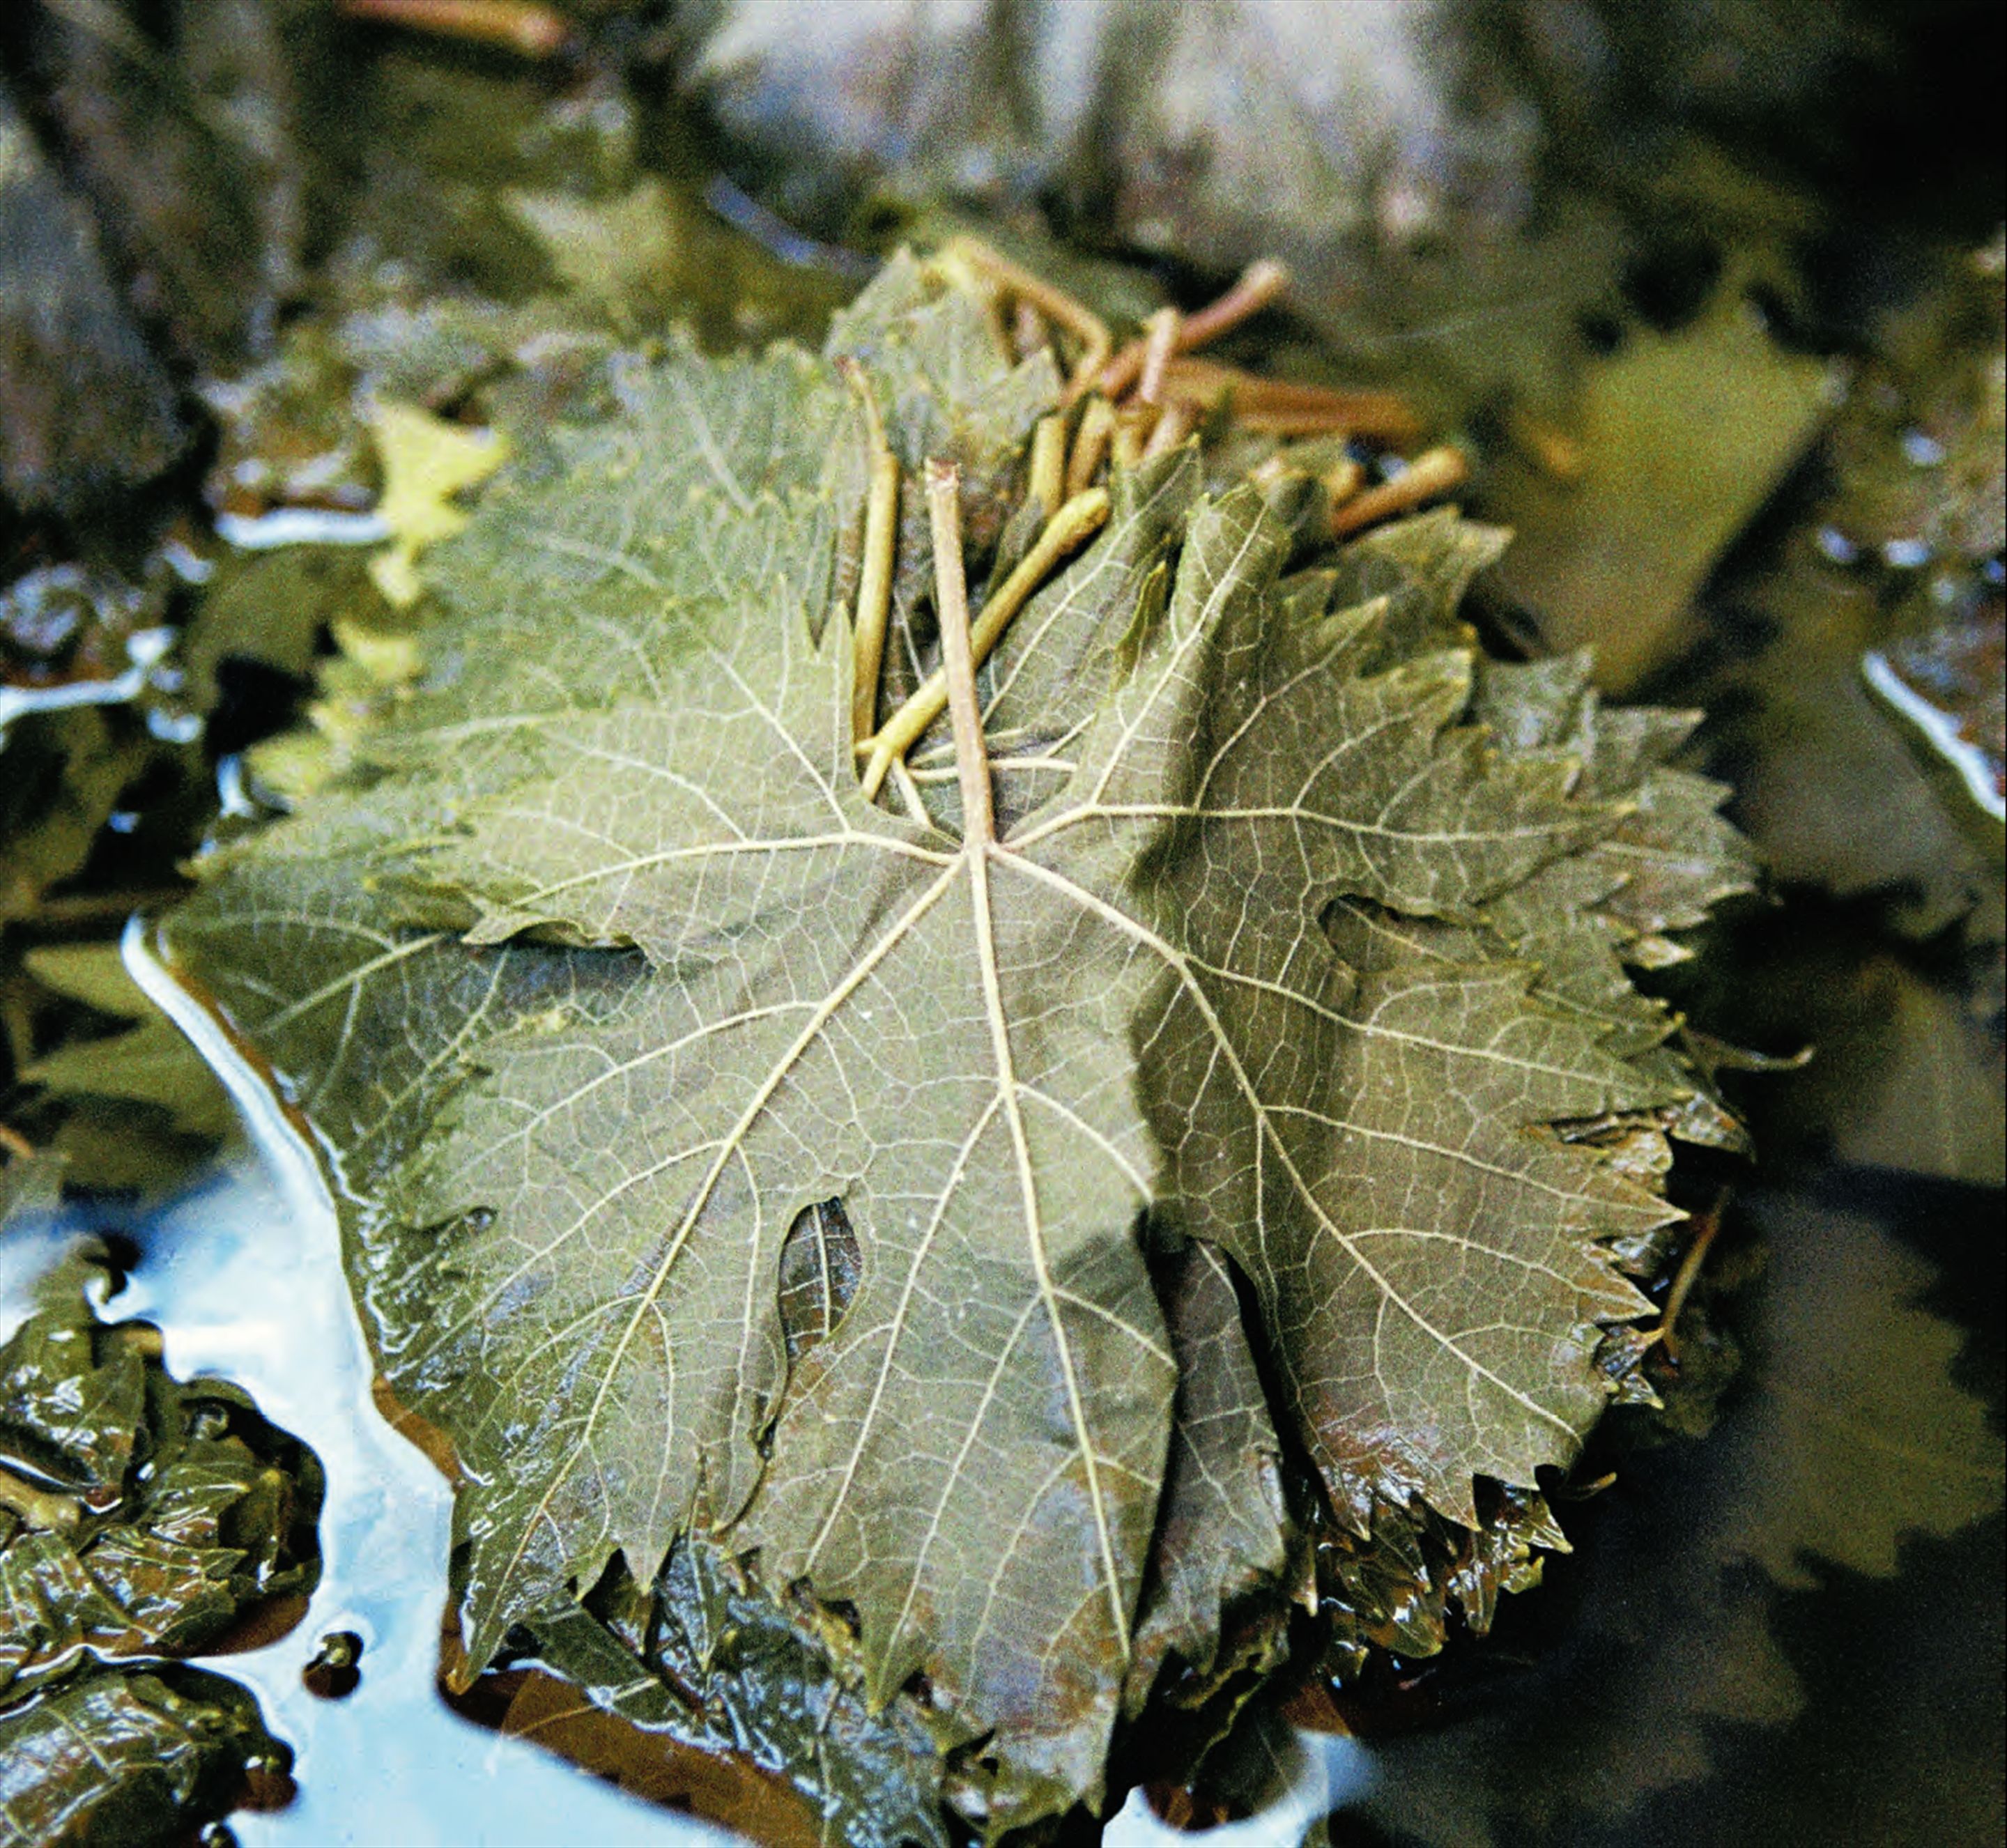 Mushroom-stuffed vine leaves with herbs